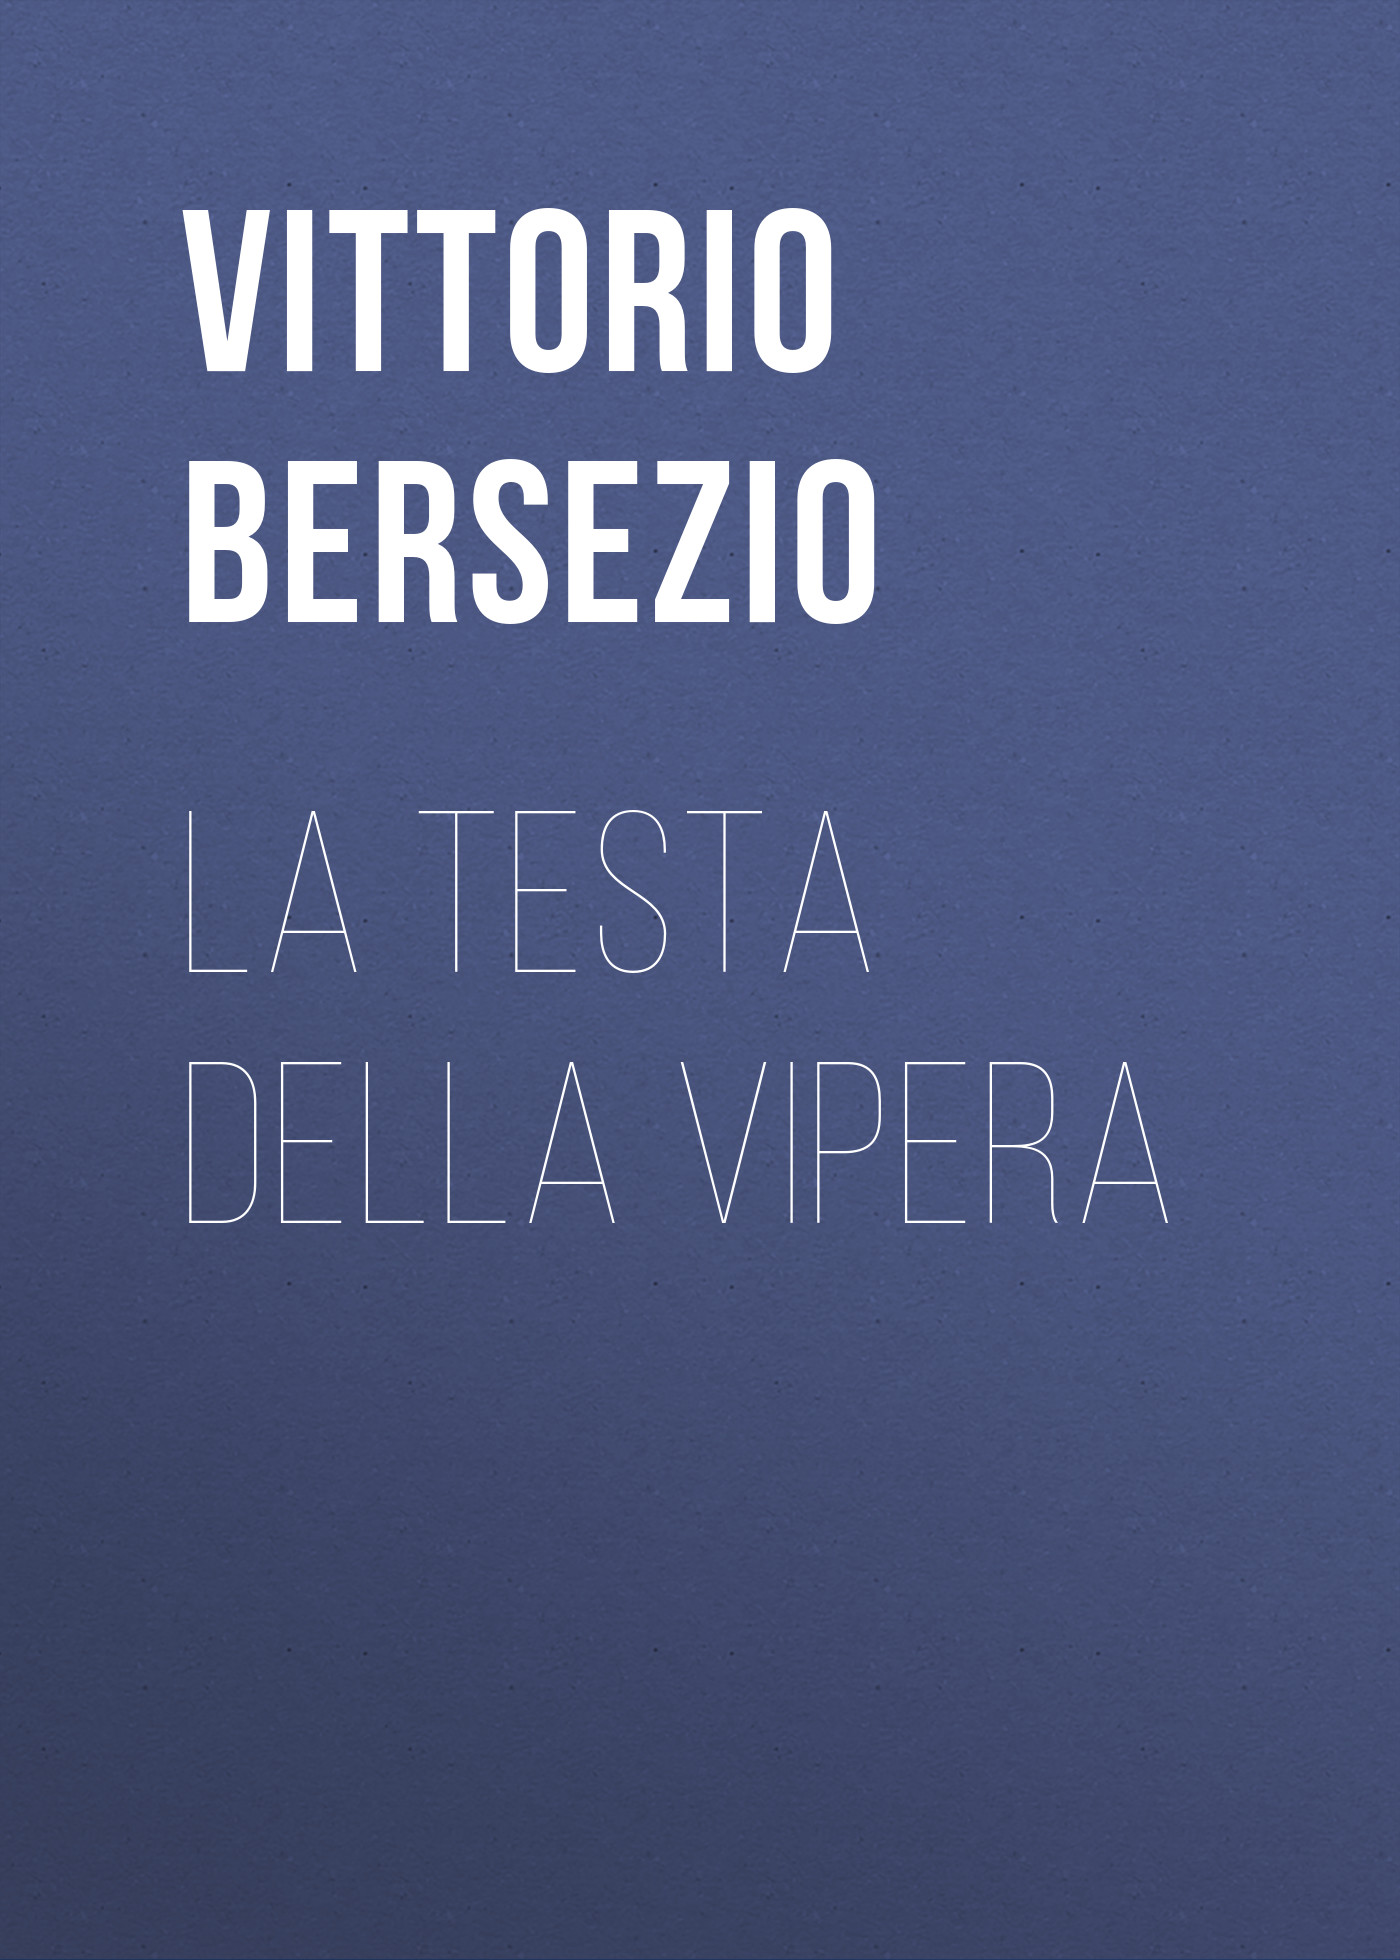 Книга La testa della vipera из серии , созданная Vittorio Bersezio, может относится к жанру Зарубежная старинная литература, Зарубежная классика. Стоимость электронной книги La testa della vipera с идентификатором 24178244 составляет 0.90 руб.